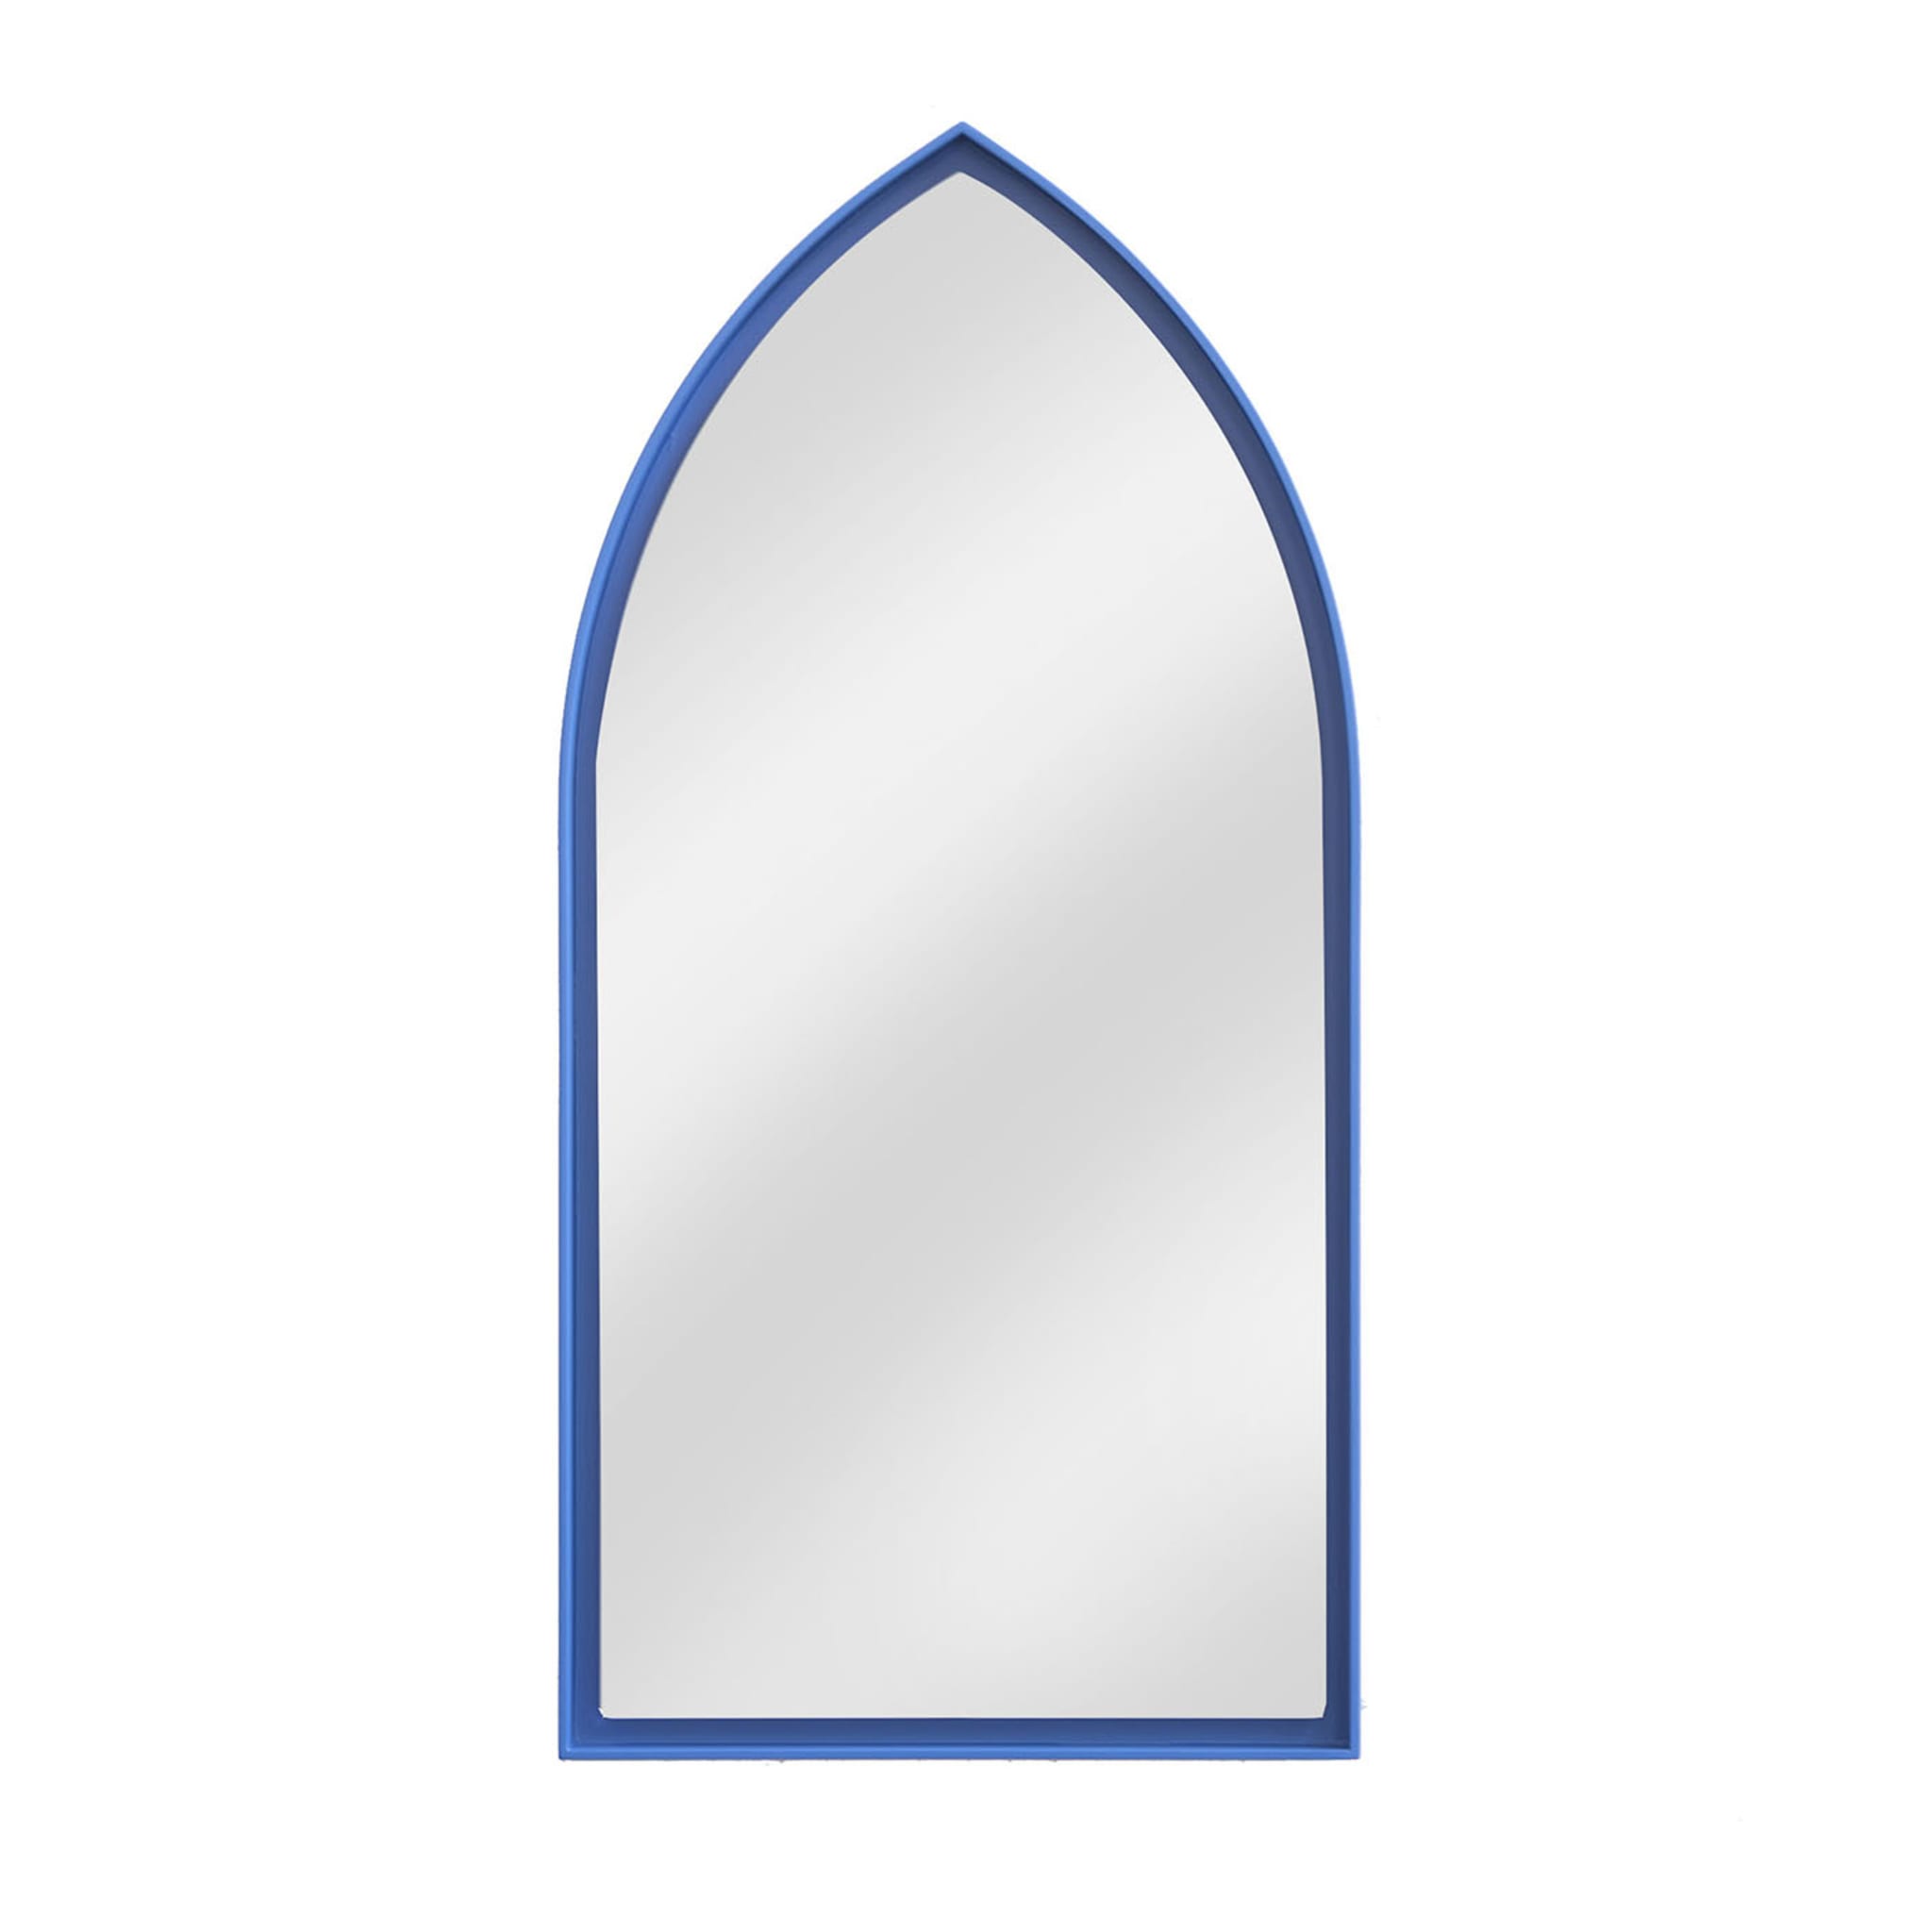 Panoramaspiegel Gothic Blau von Zaven  - Hauptansicht